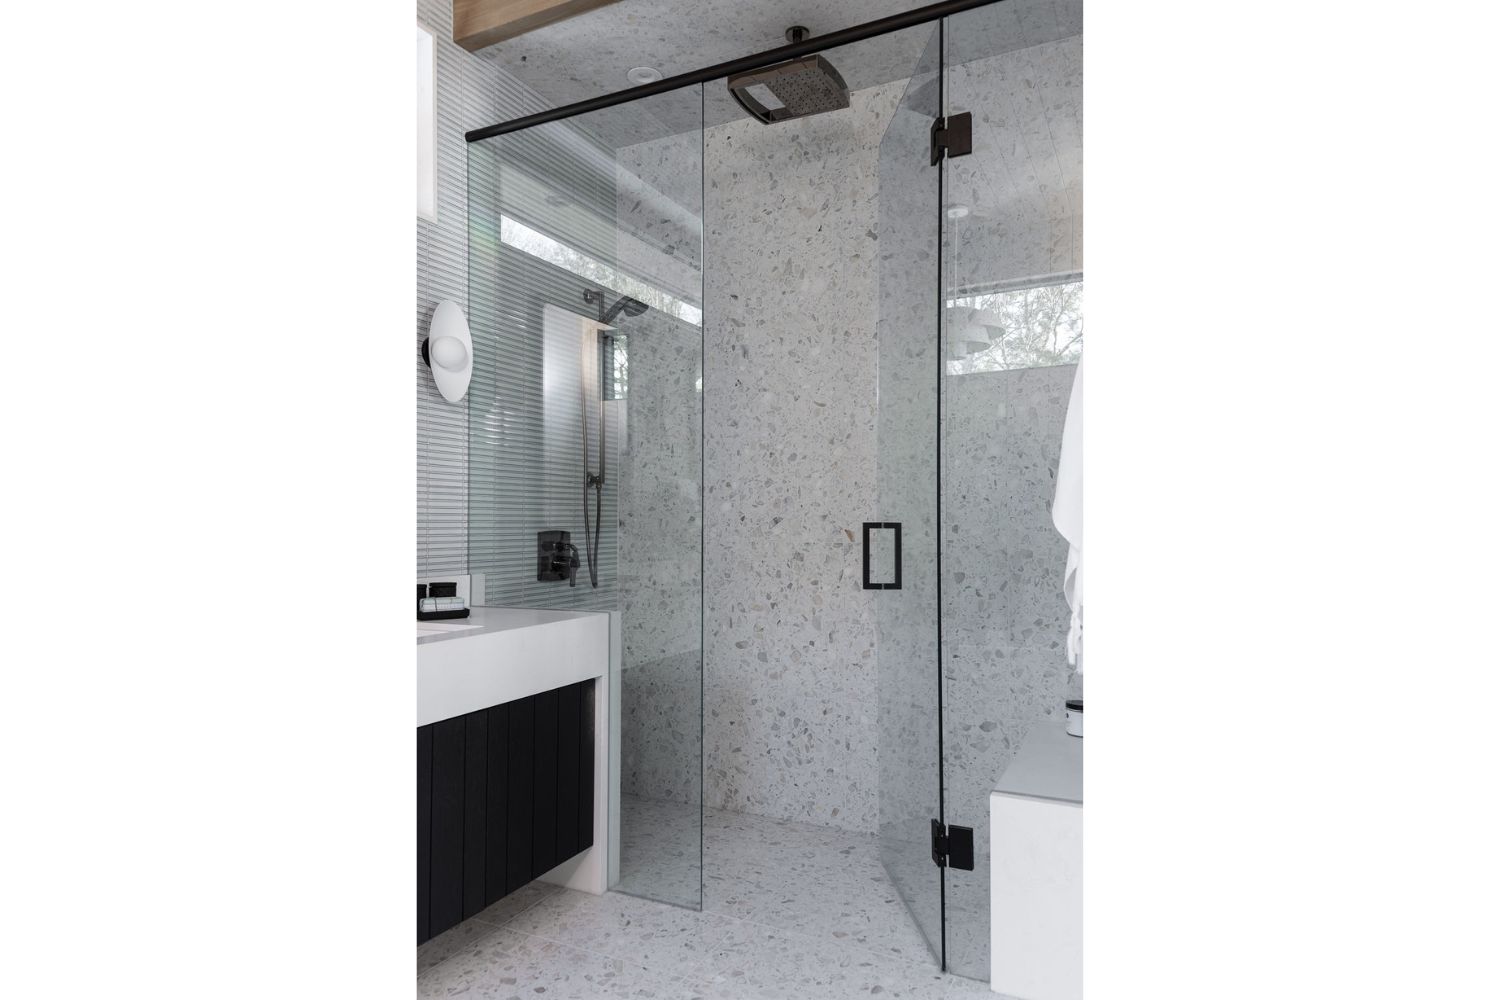 Project Fieldale: Walk in custom glass bathroom shower